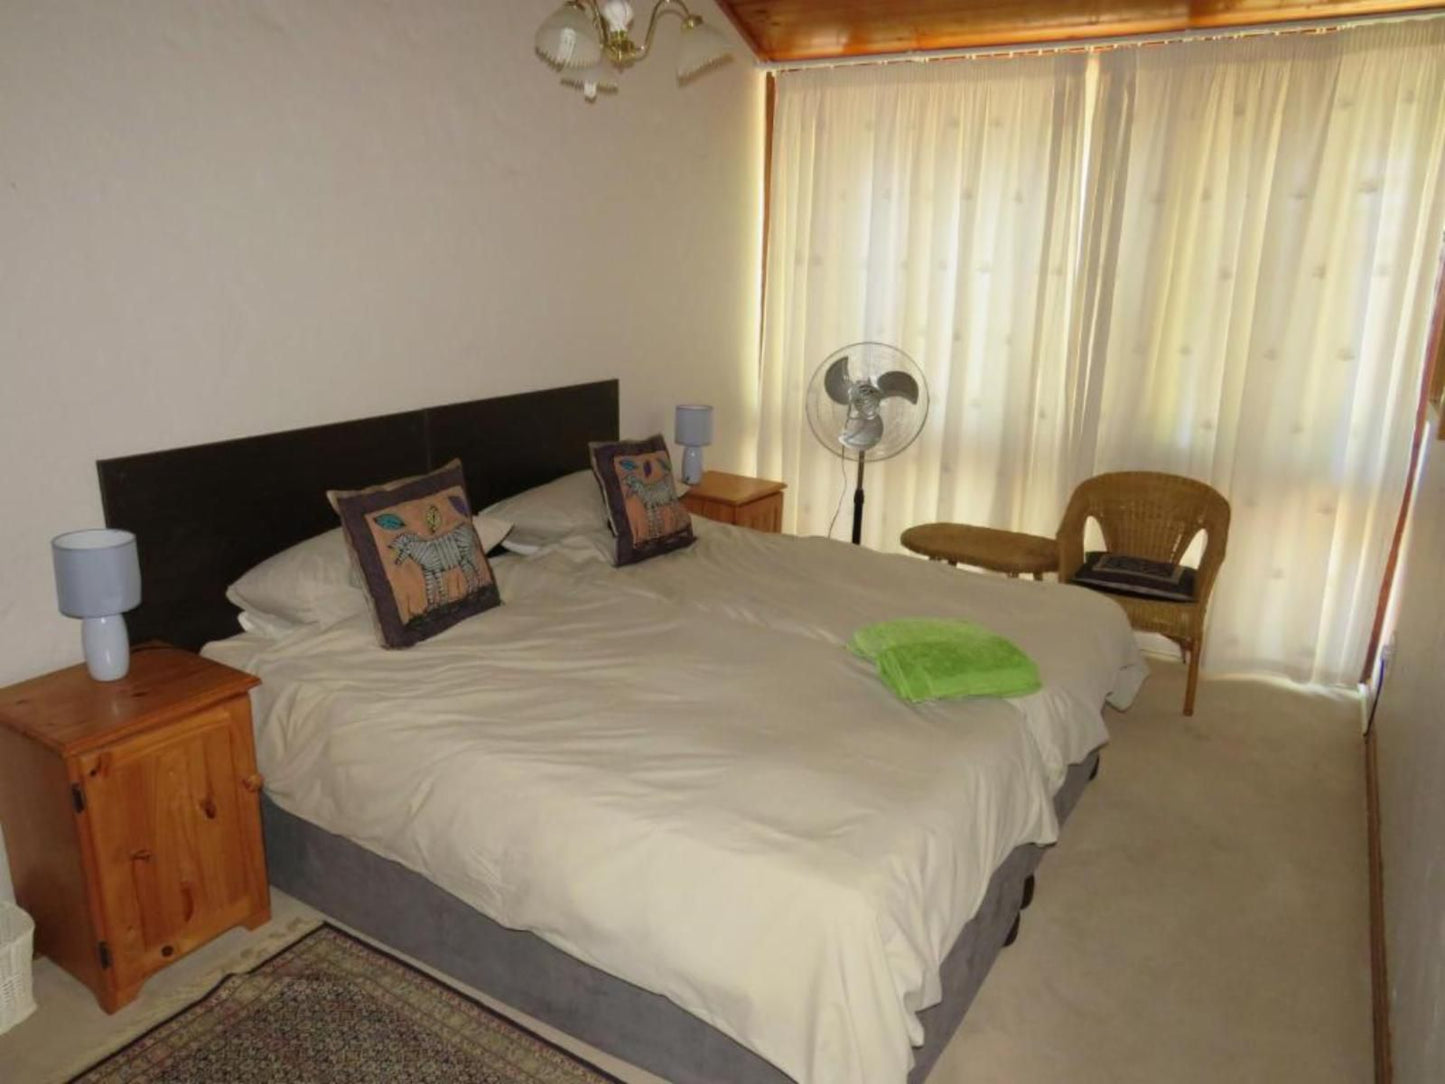 Haus Victoria Oudtshoorn Western Cape South Africa Sepia Tones, Bedroom